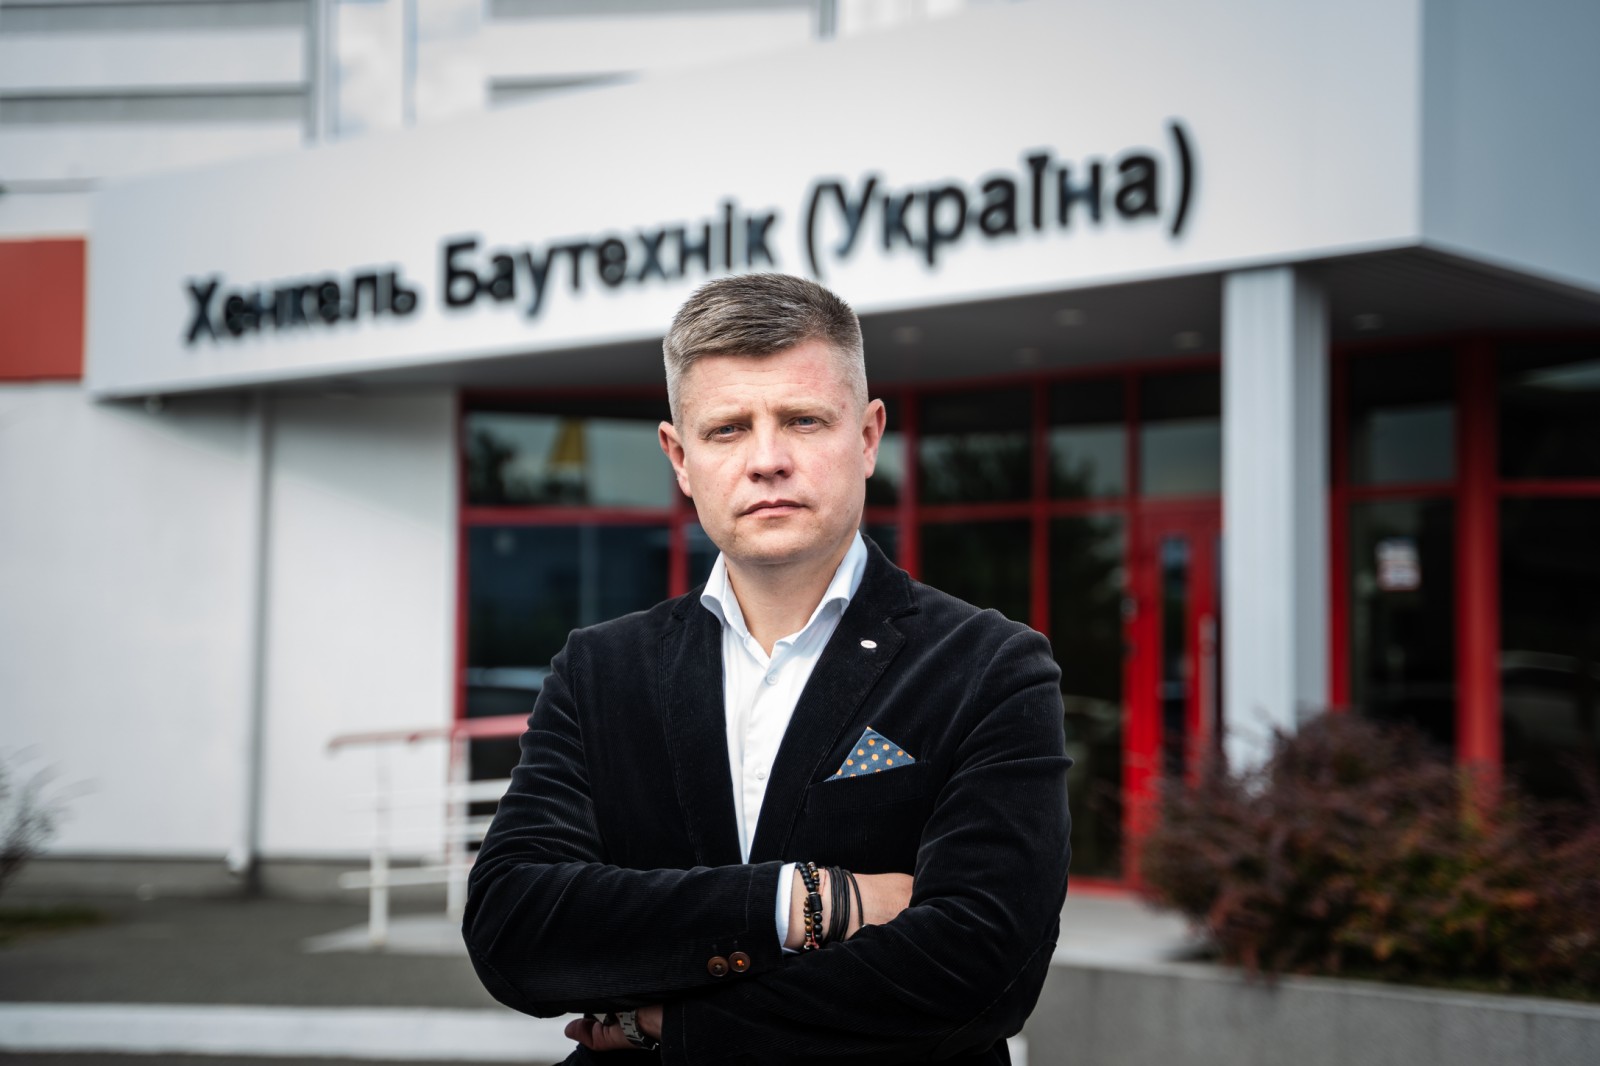 Инвестируем в Украину: Henkel Bautechnik